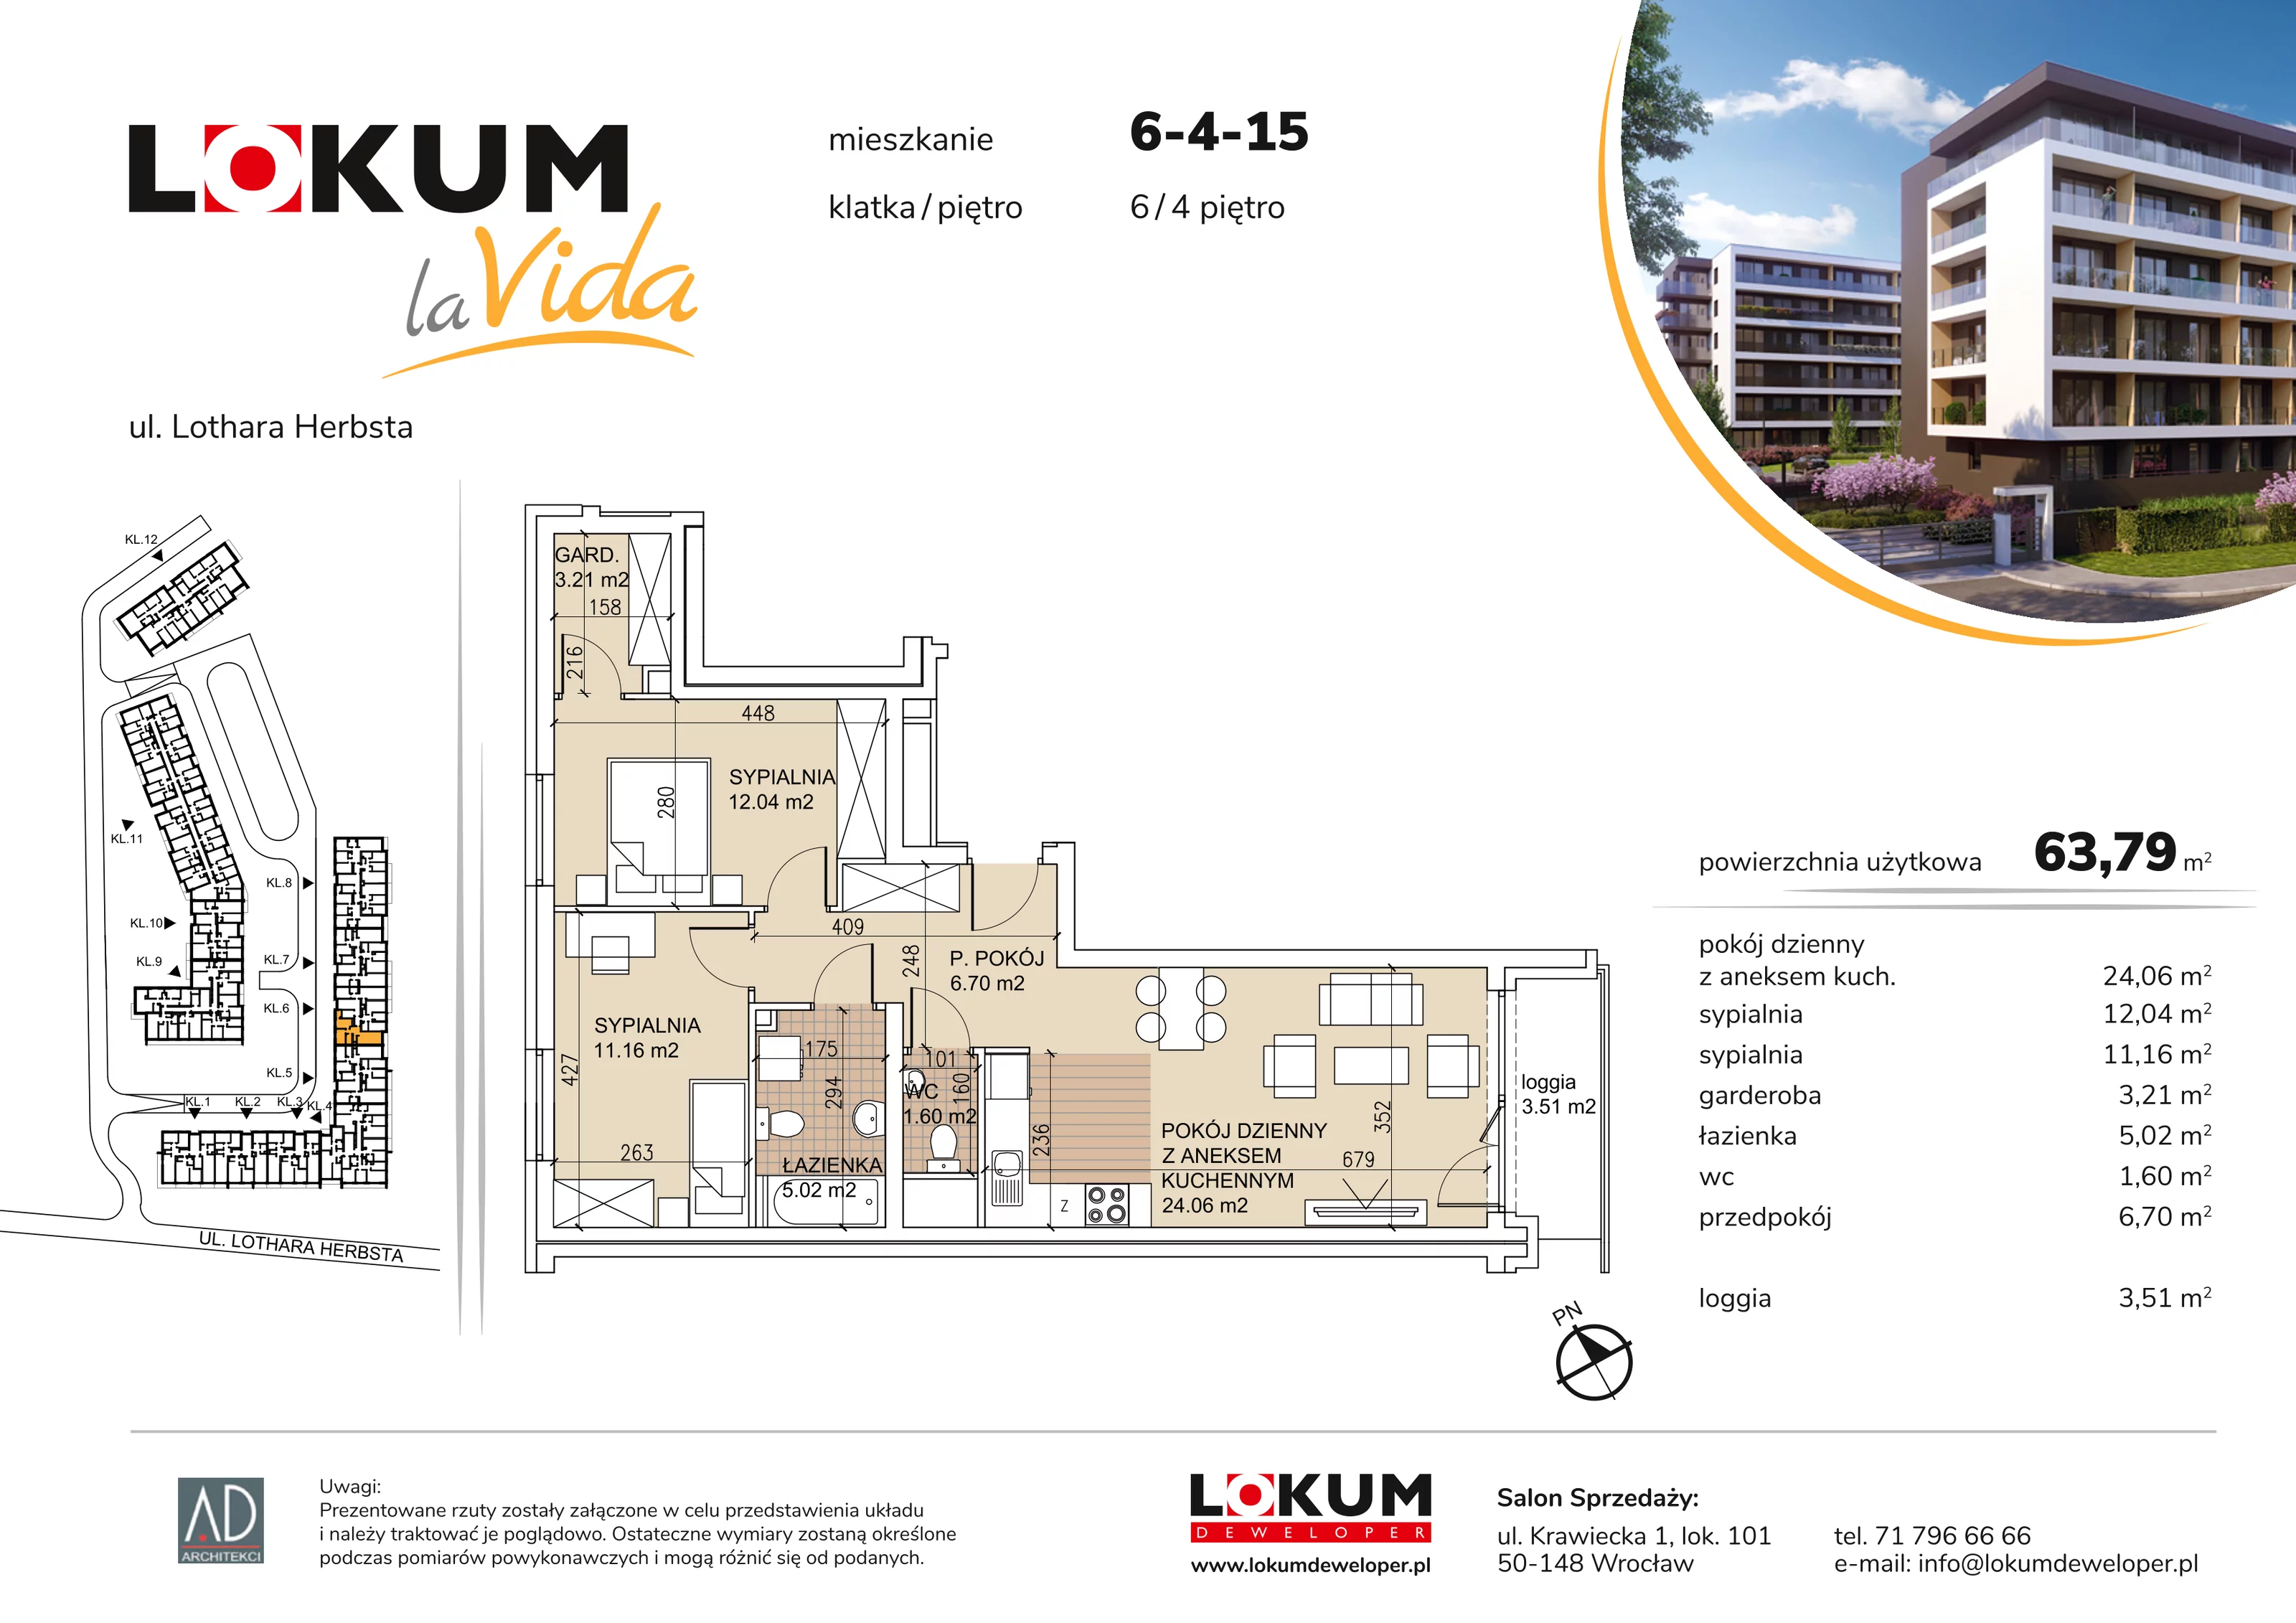 Mieszkanie 63,79 m², piętro 4, oferta nr 6-4-15, Lokum la Vida, Wrocław, Sołtysowice, ul. Lothara Herbsta